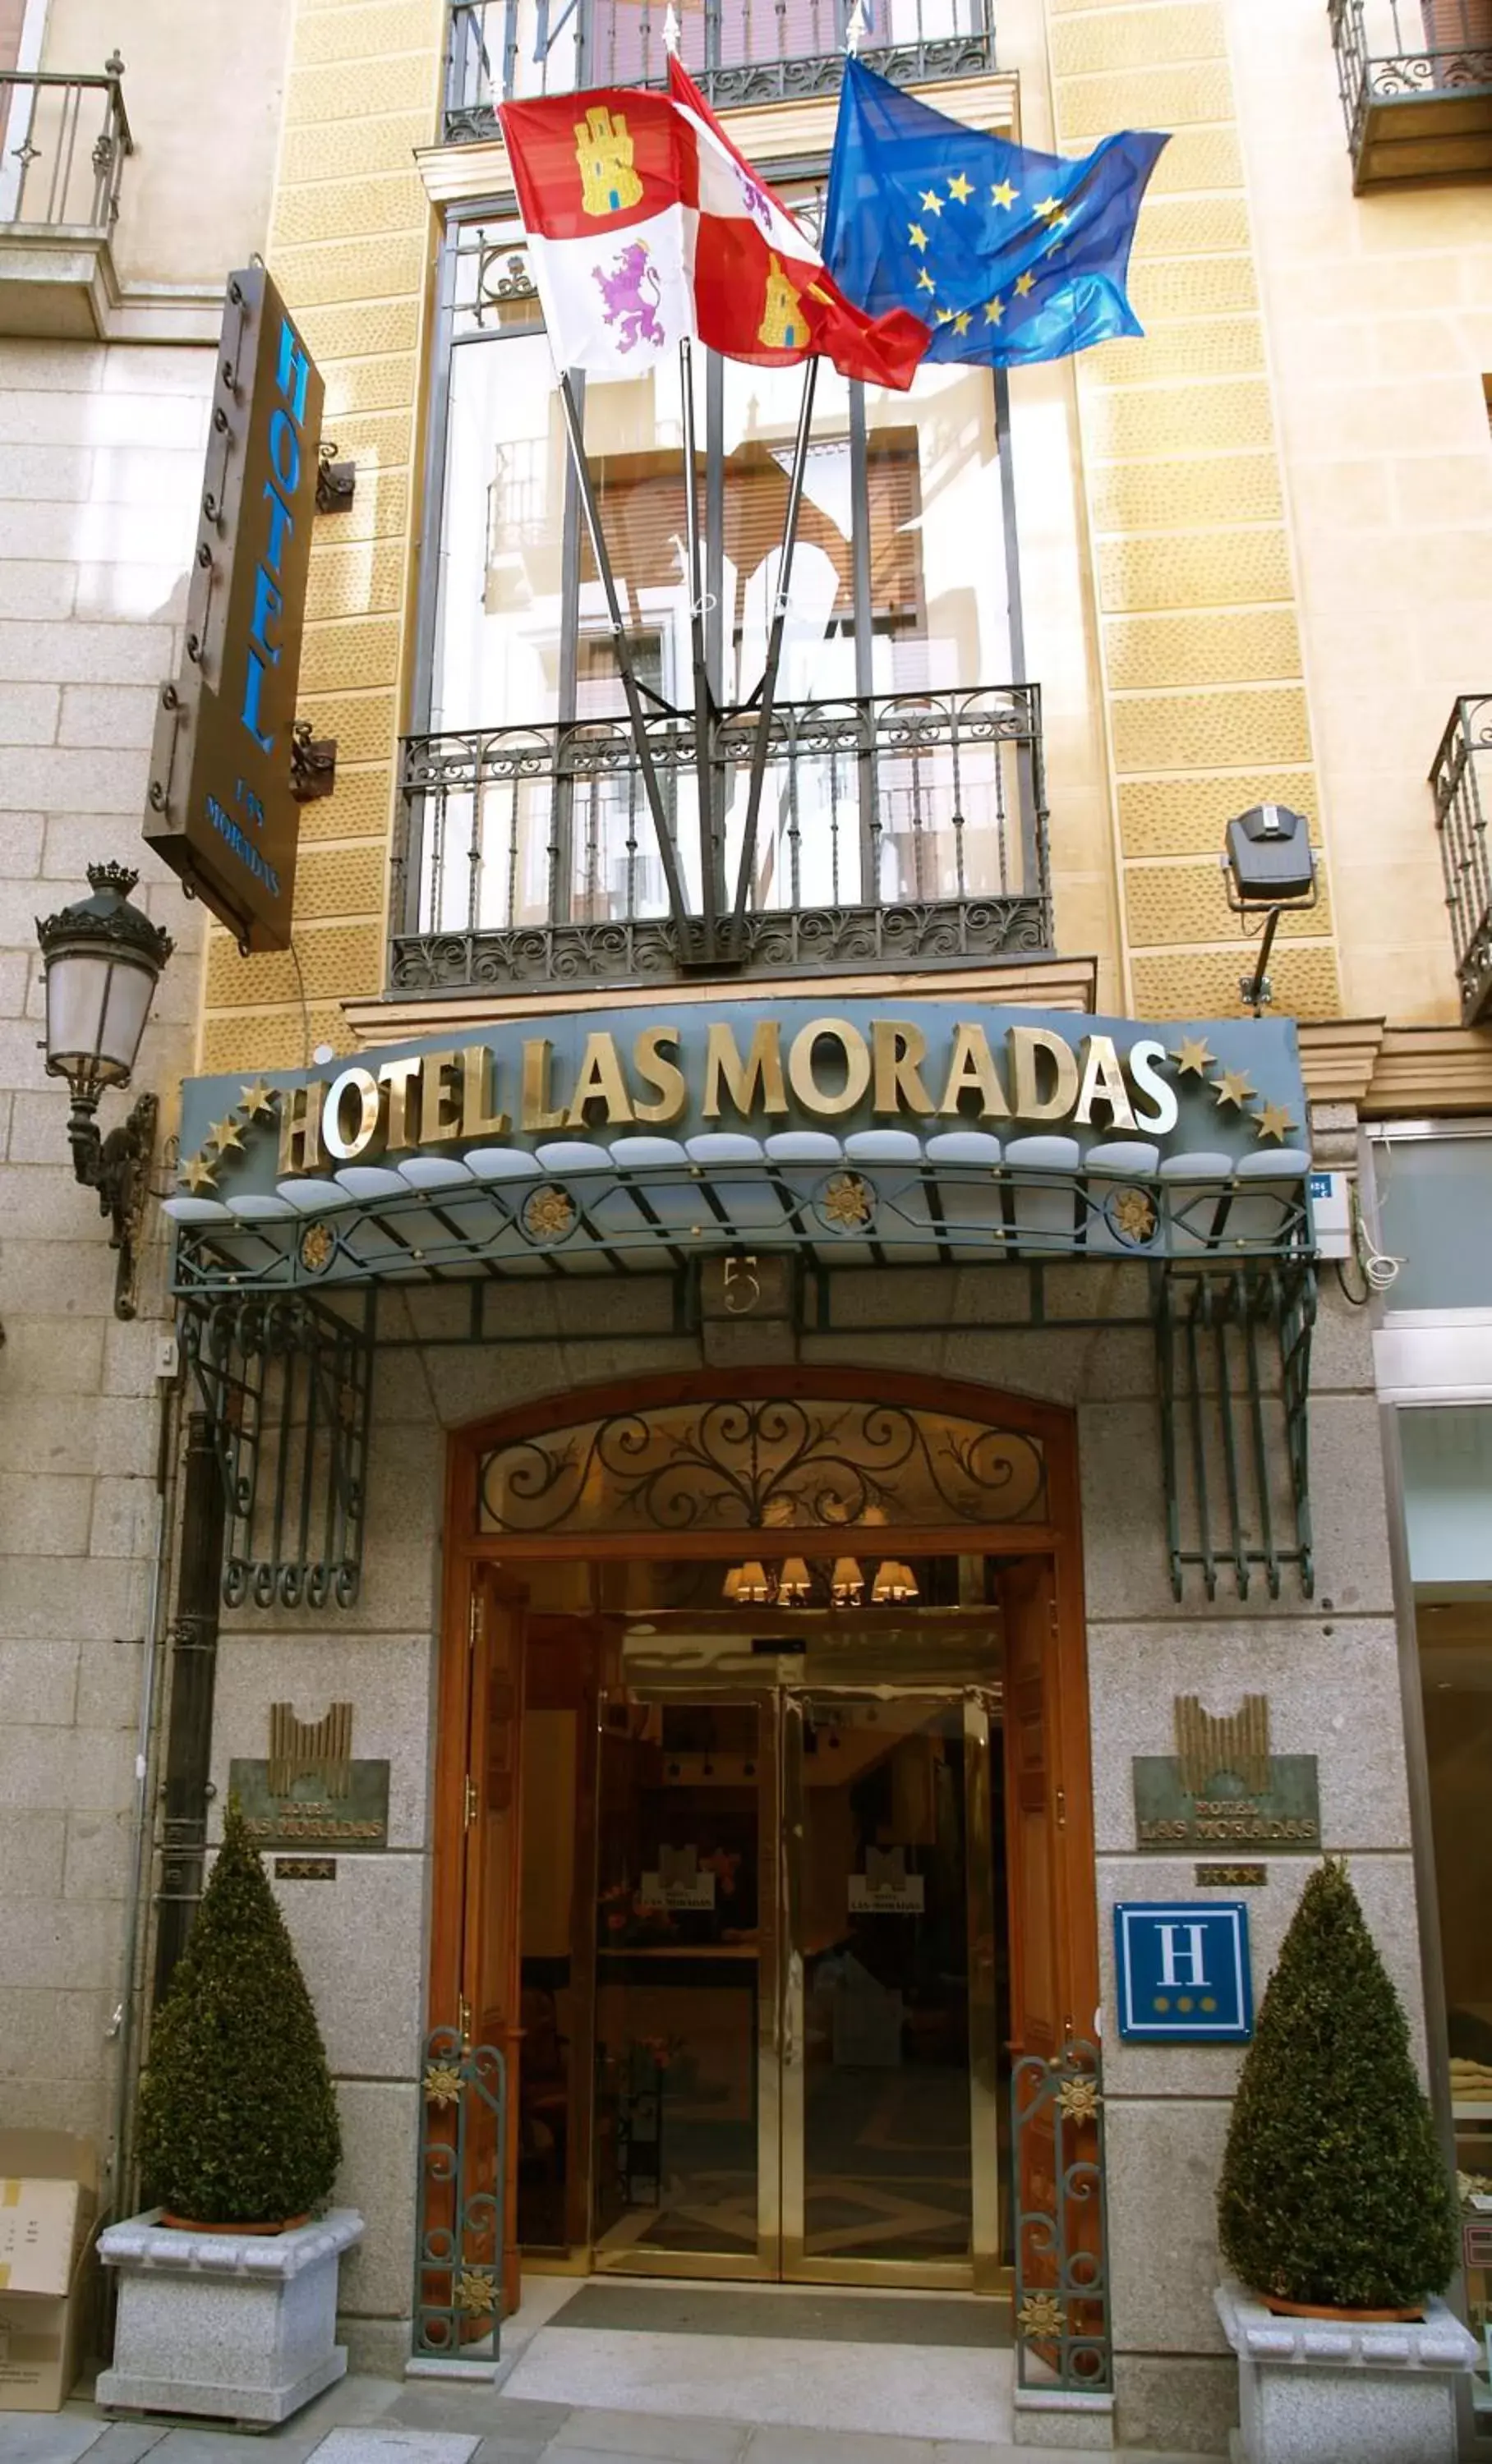 Facade/entrance in Hotel Las Moradas